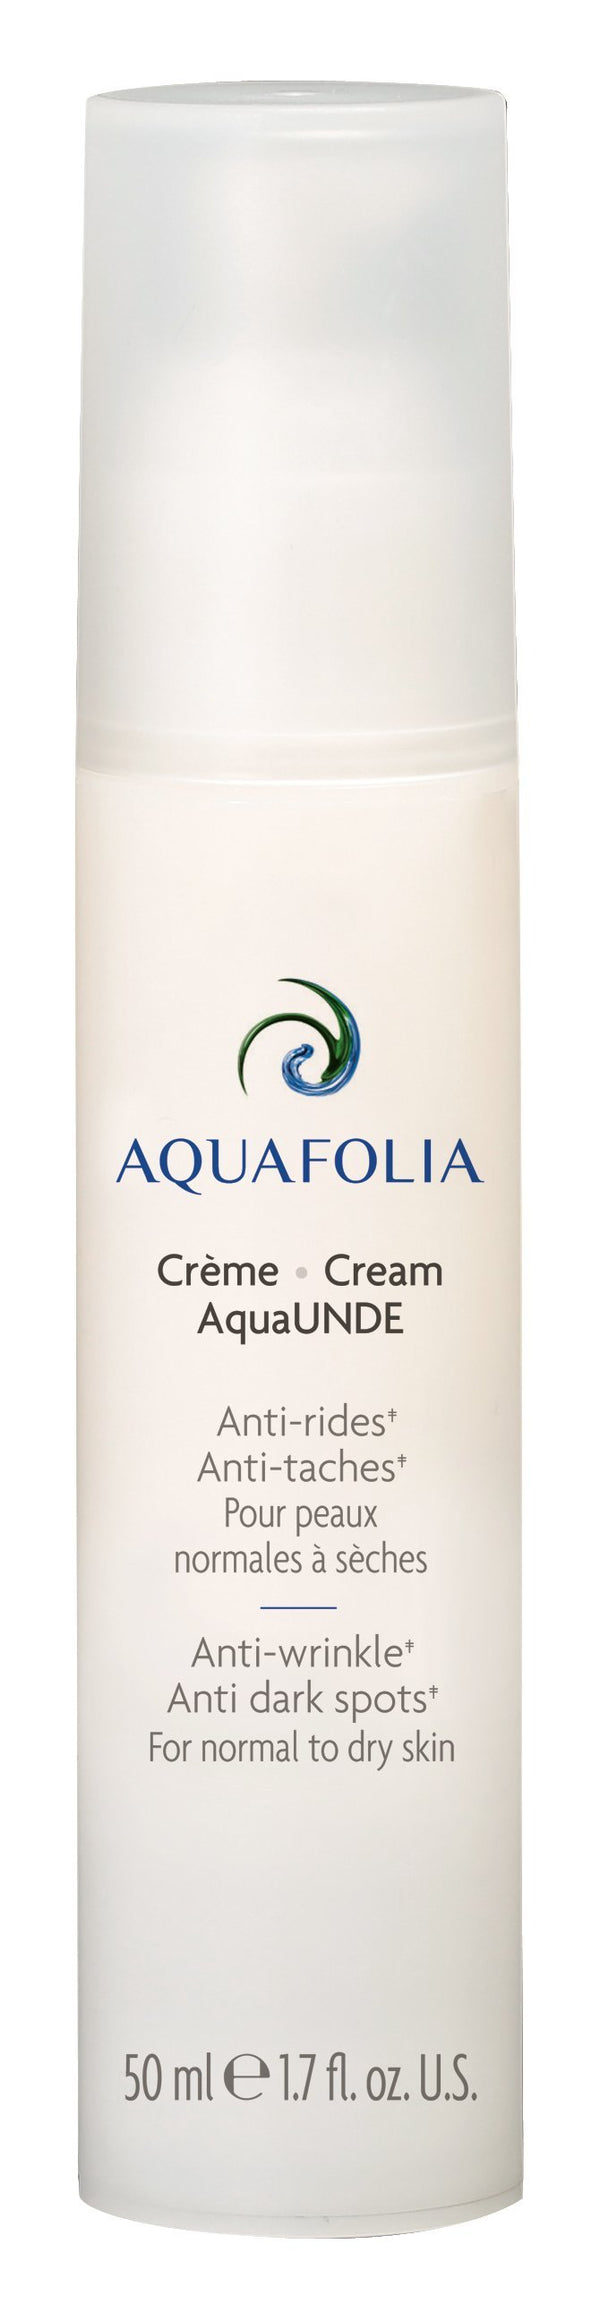 Crème AquaUNDE - cliniqueconceptm